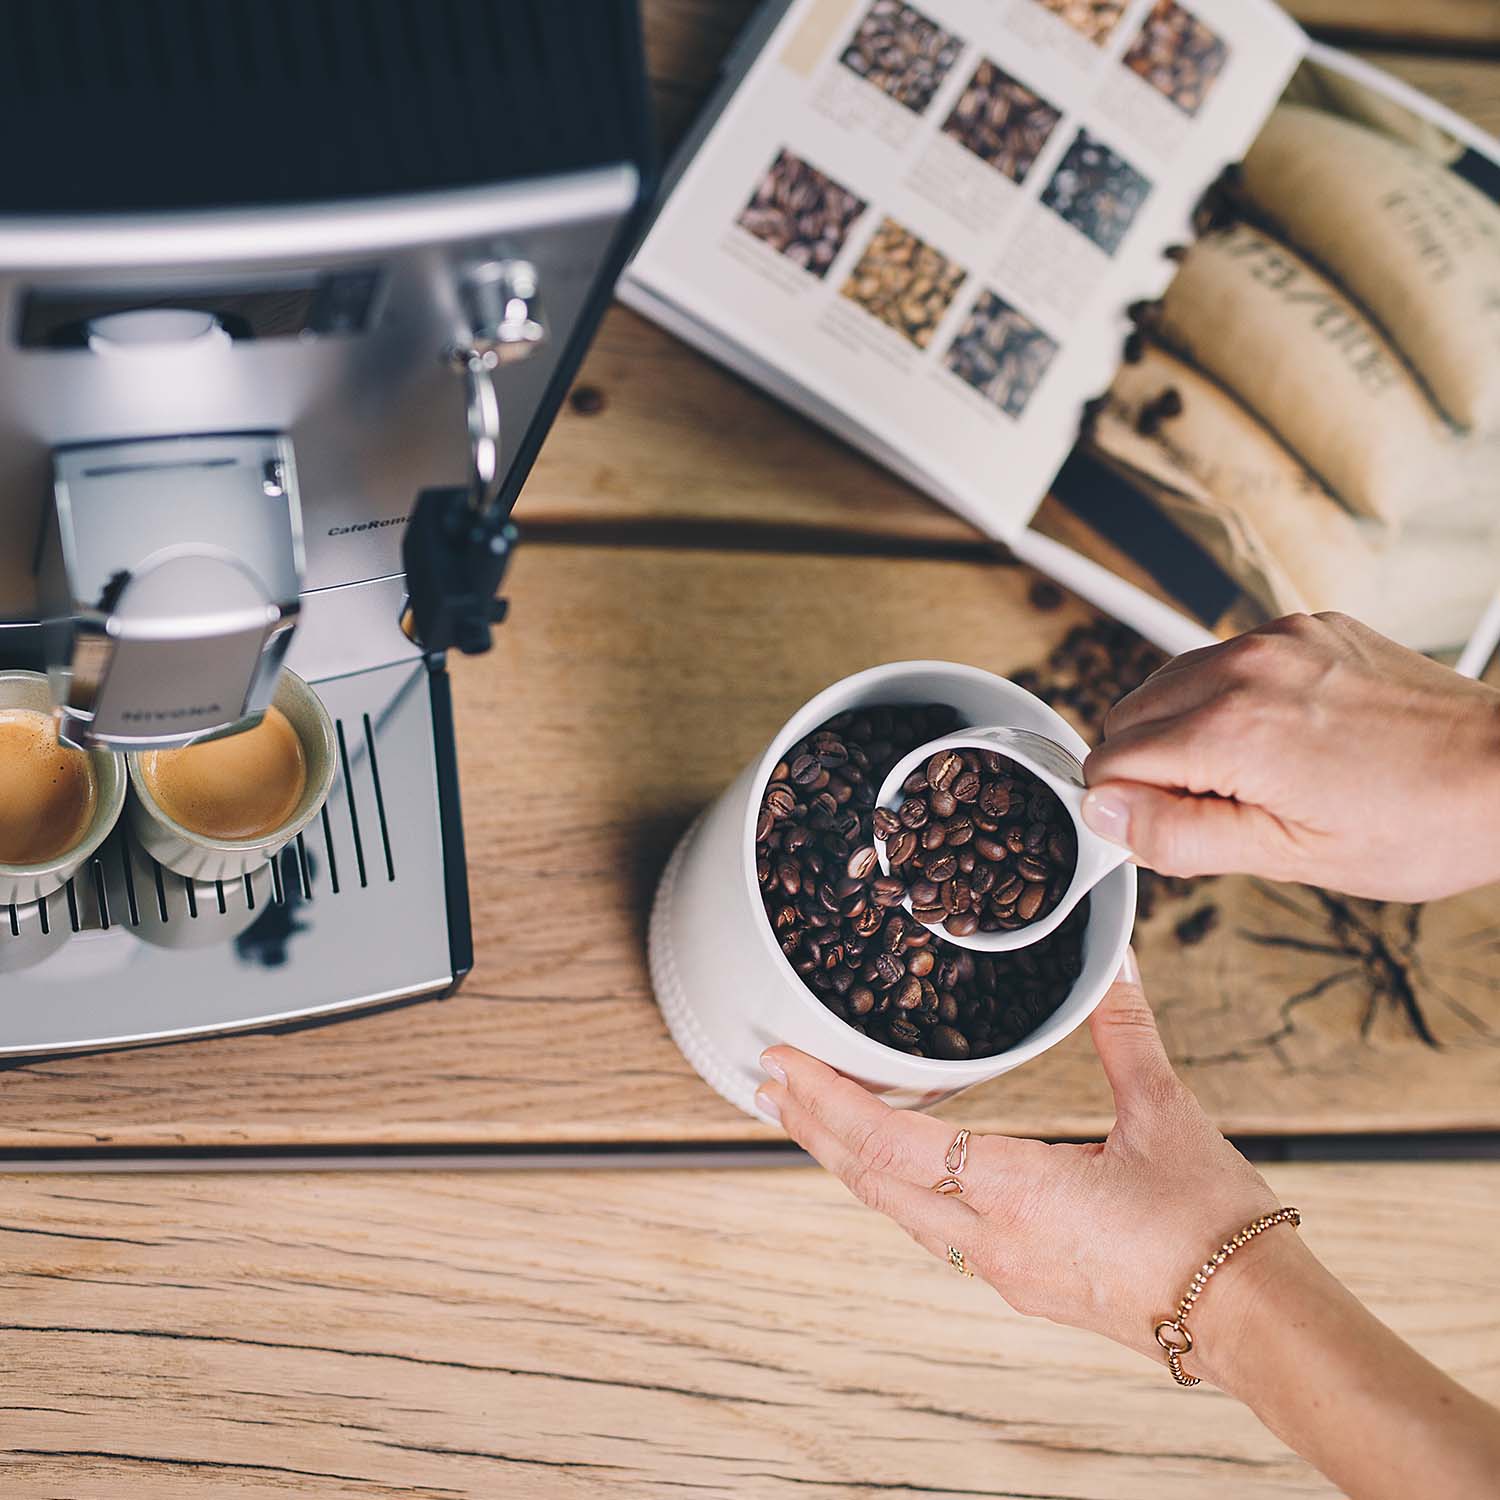 Person bereitet Kaffee mit einem NIVONA Vollautomaten zu. Zwei frisch zubereitete Espresso sind auf der Abtropfschale zu sehen, während die Person Kaffeebohnen aus einem Behälter in einen Messbecher schöpft. Im Hintergrund ist ein Kaffeebuch mit Kaffeebohnen und einem Kaffeesack abgebildet.